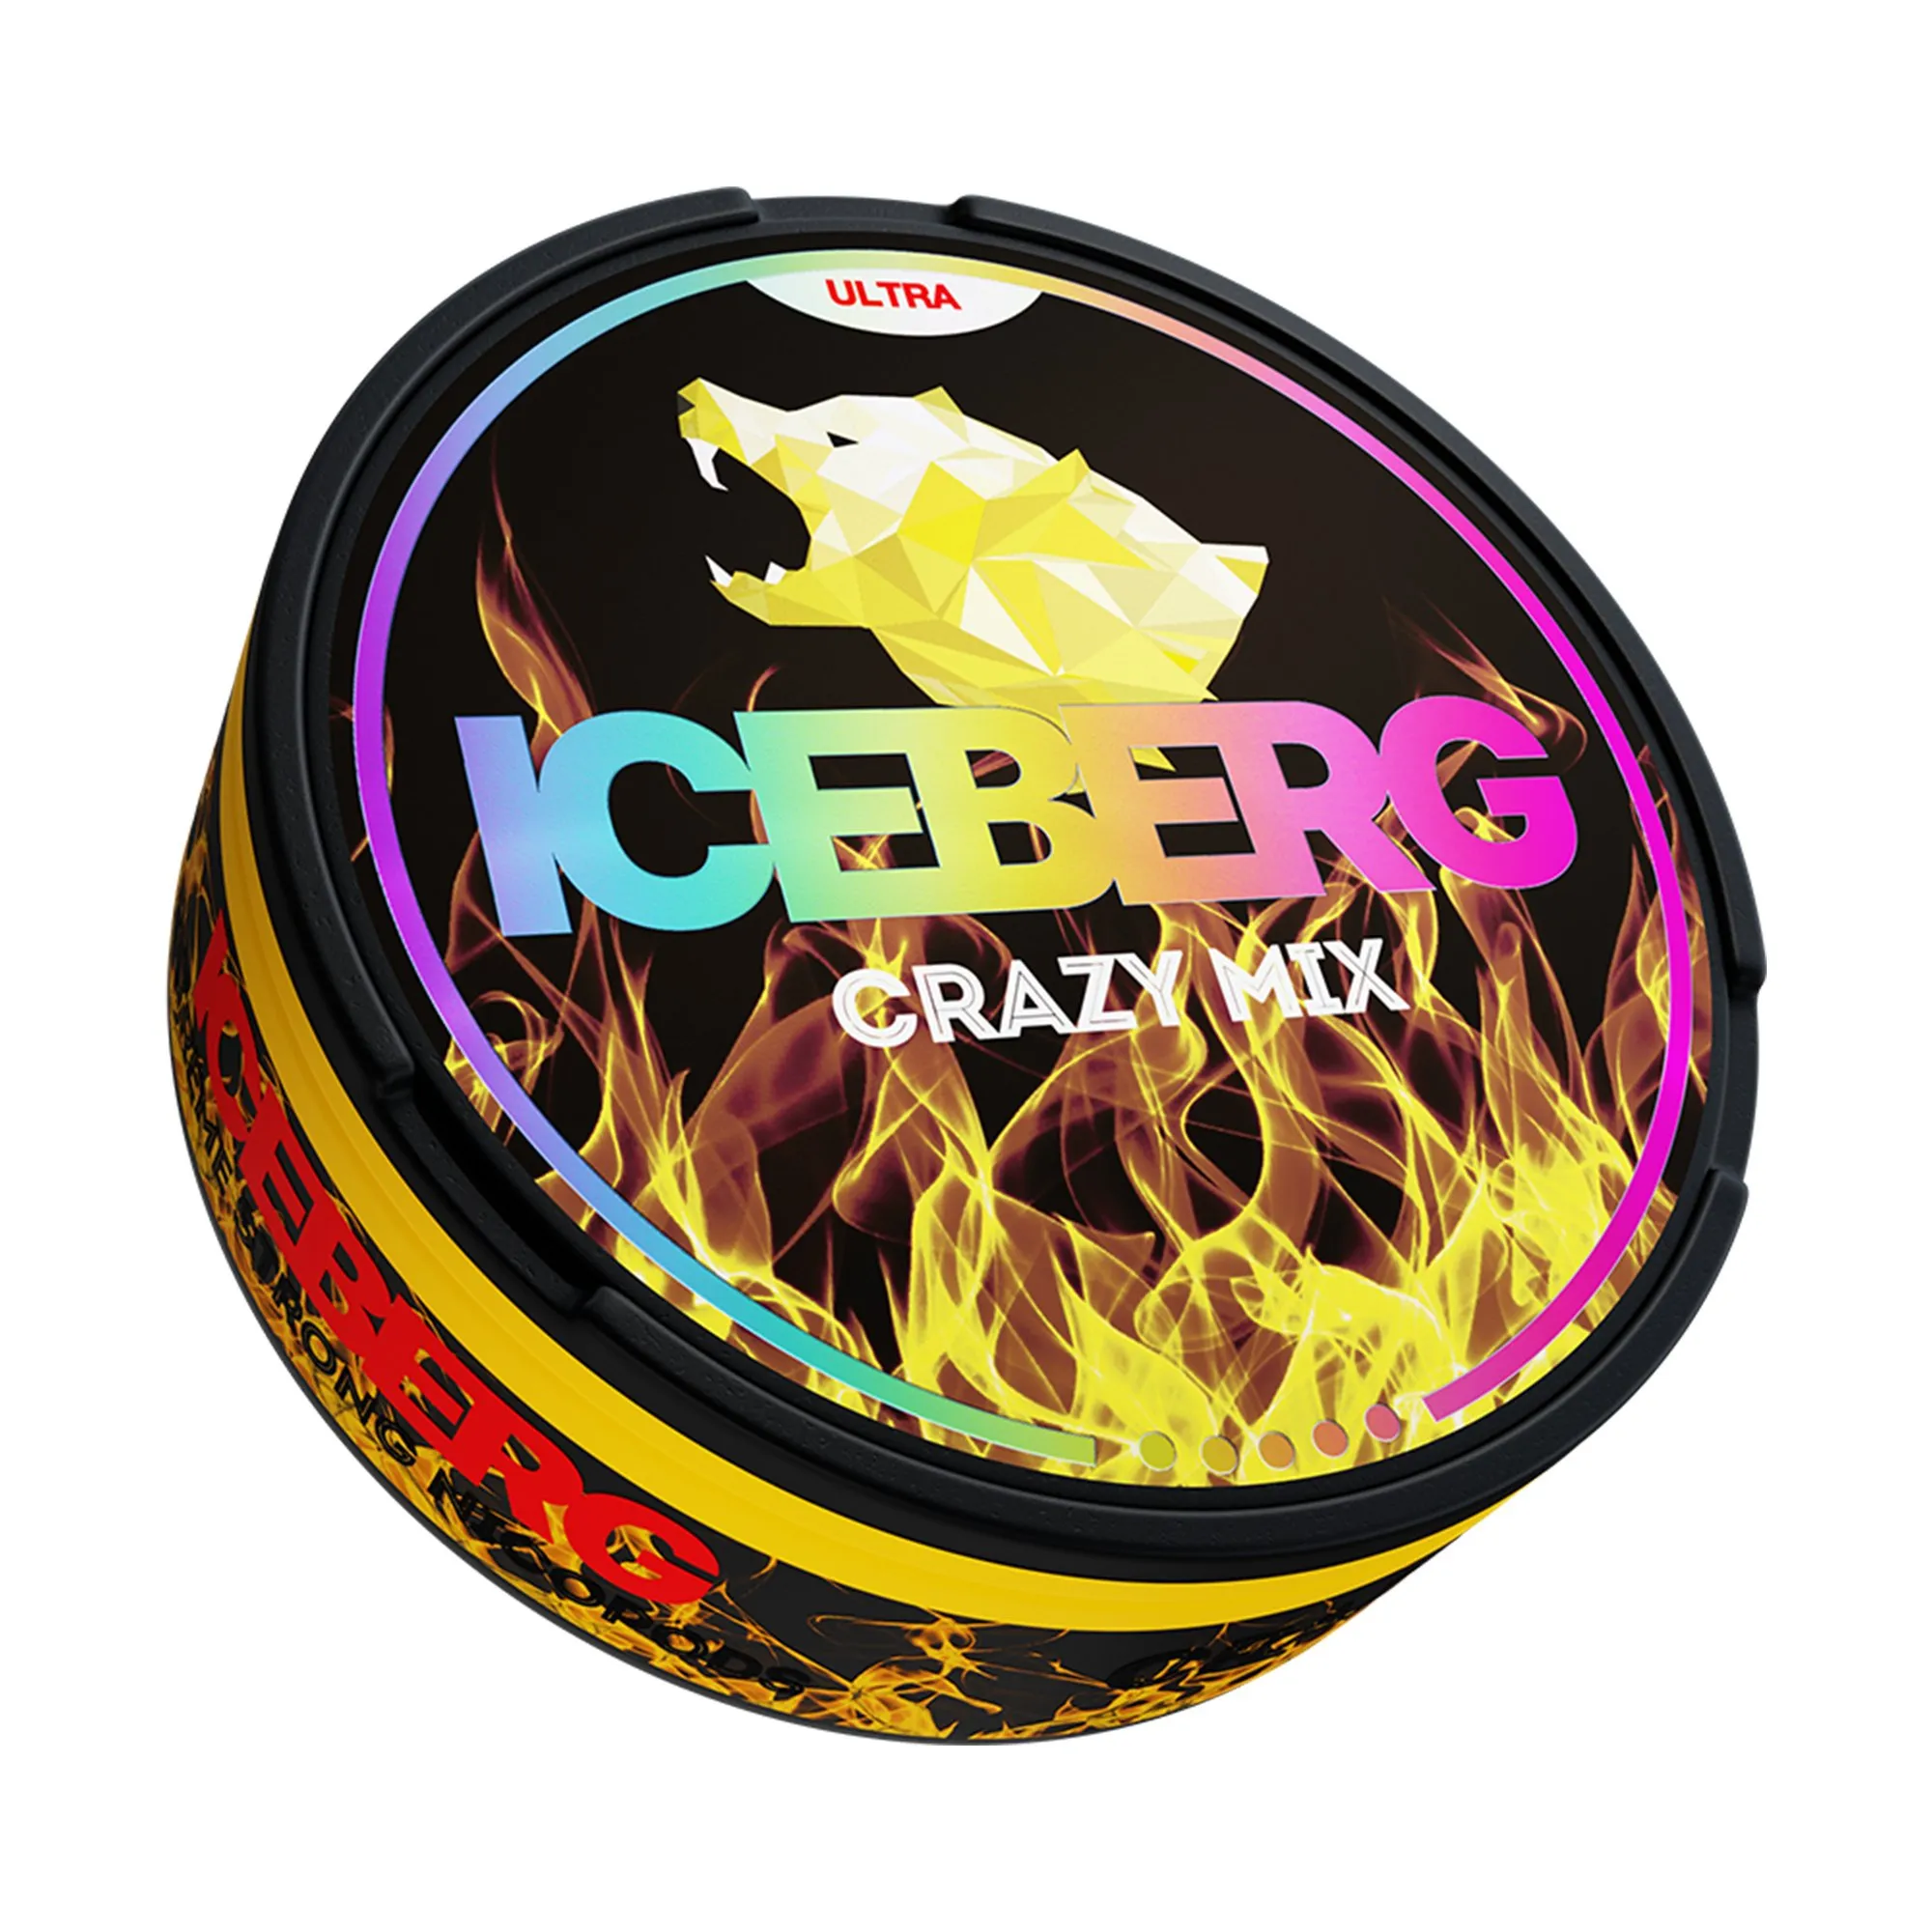 Iceberg Crazy Mix